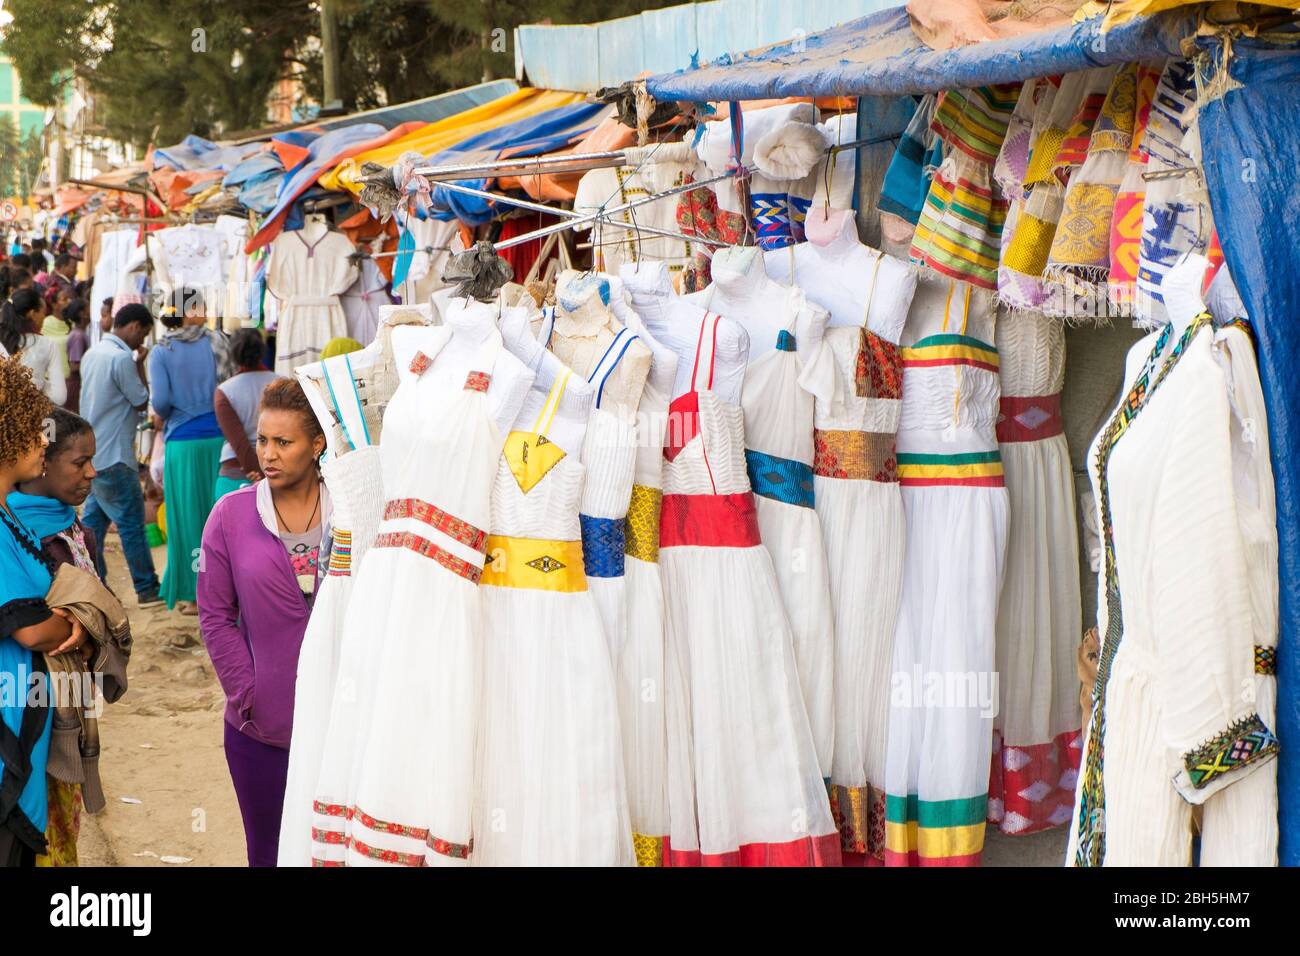 https://c8.alamy.com/compes/2bh5hm7/gente-que-compra-en-un-mercado-de-ropa-al-aire-libre-que-vende-vestidos-cerca-de-addis-abeba-en-etiopia-africa-2bh5hm7.jpg